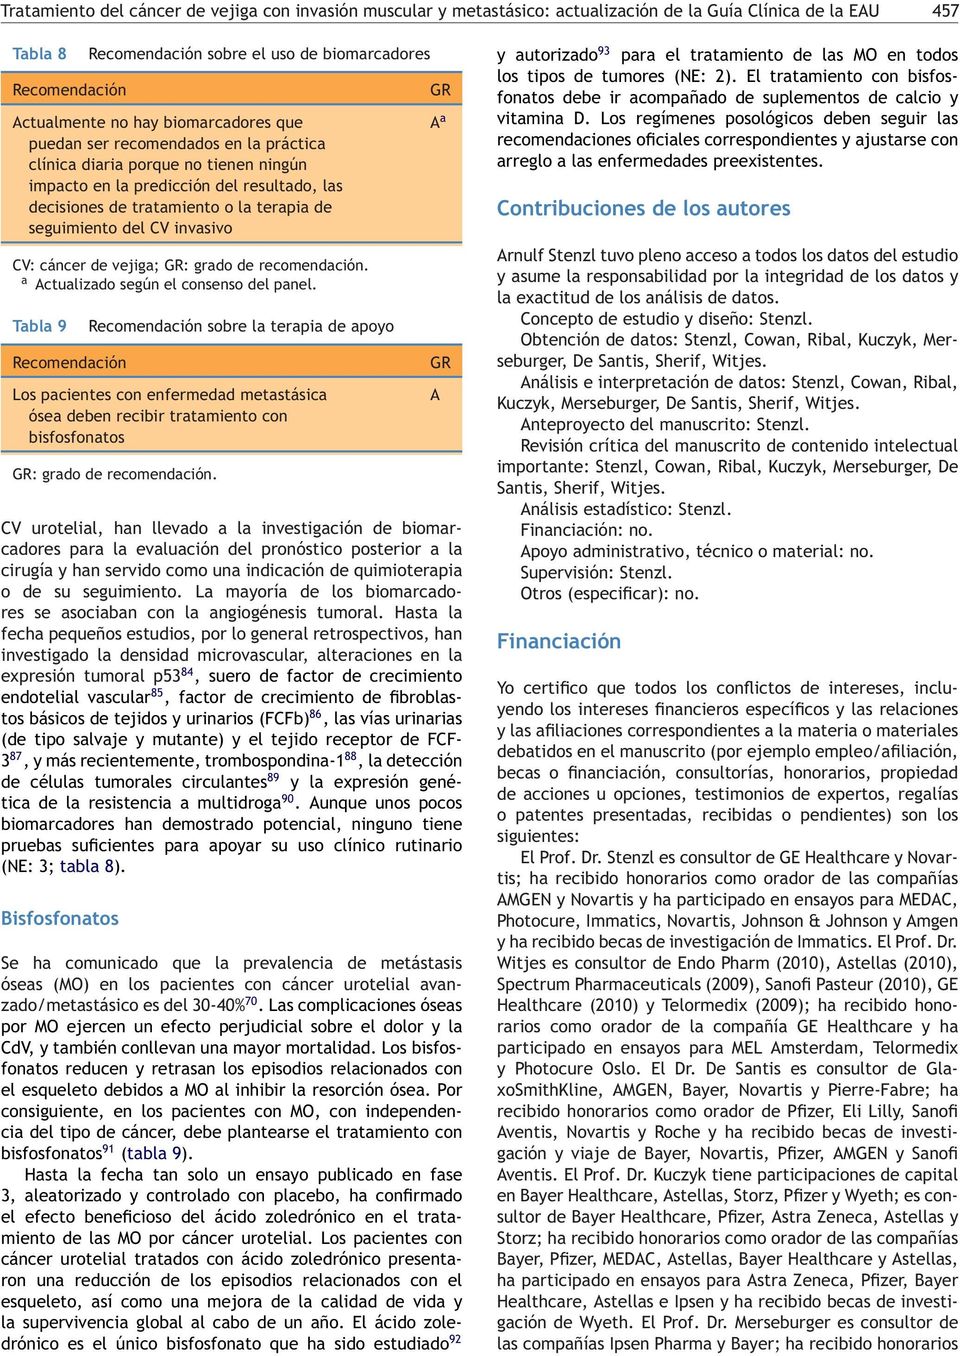 del V invasivo V: cáncer de vejiga; : grado de recomendación. a Actualizado según el consenso del panel.